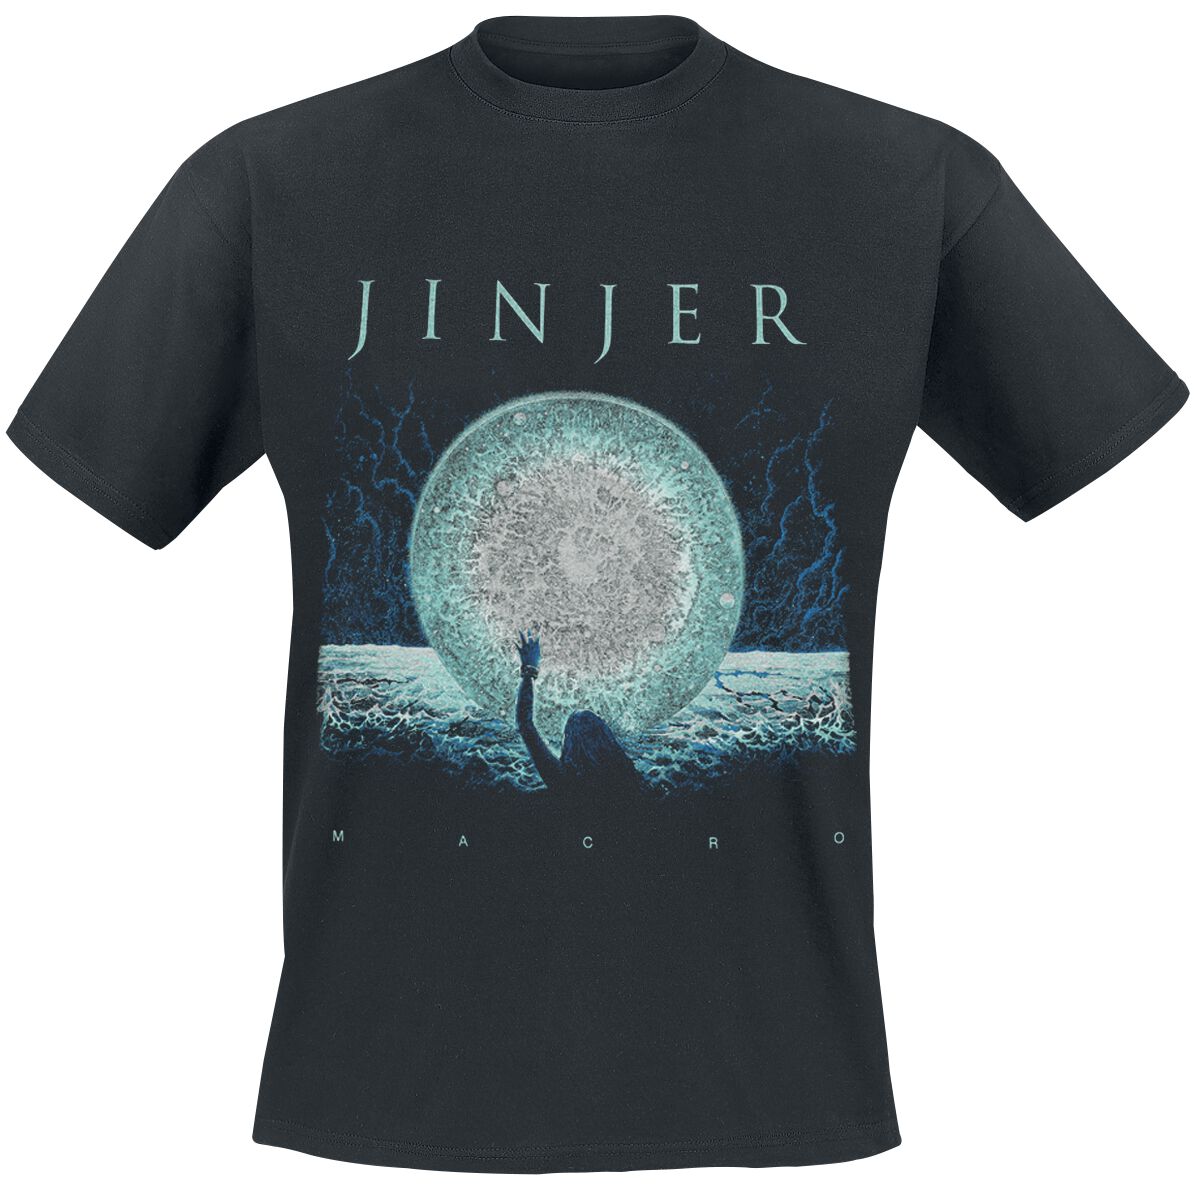 Jinjer T-Shirt - Macro - S bis 3XL - für Männer - Größe 3XL - schwarz  - Lizenziertes Merchandise!